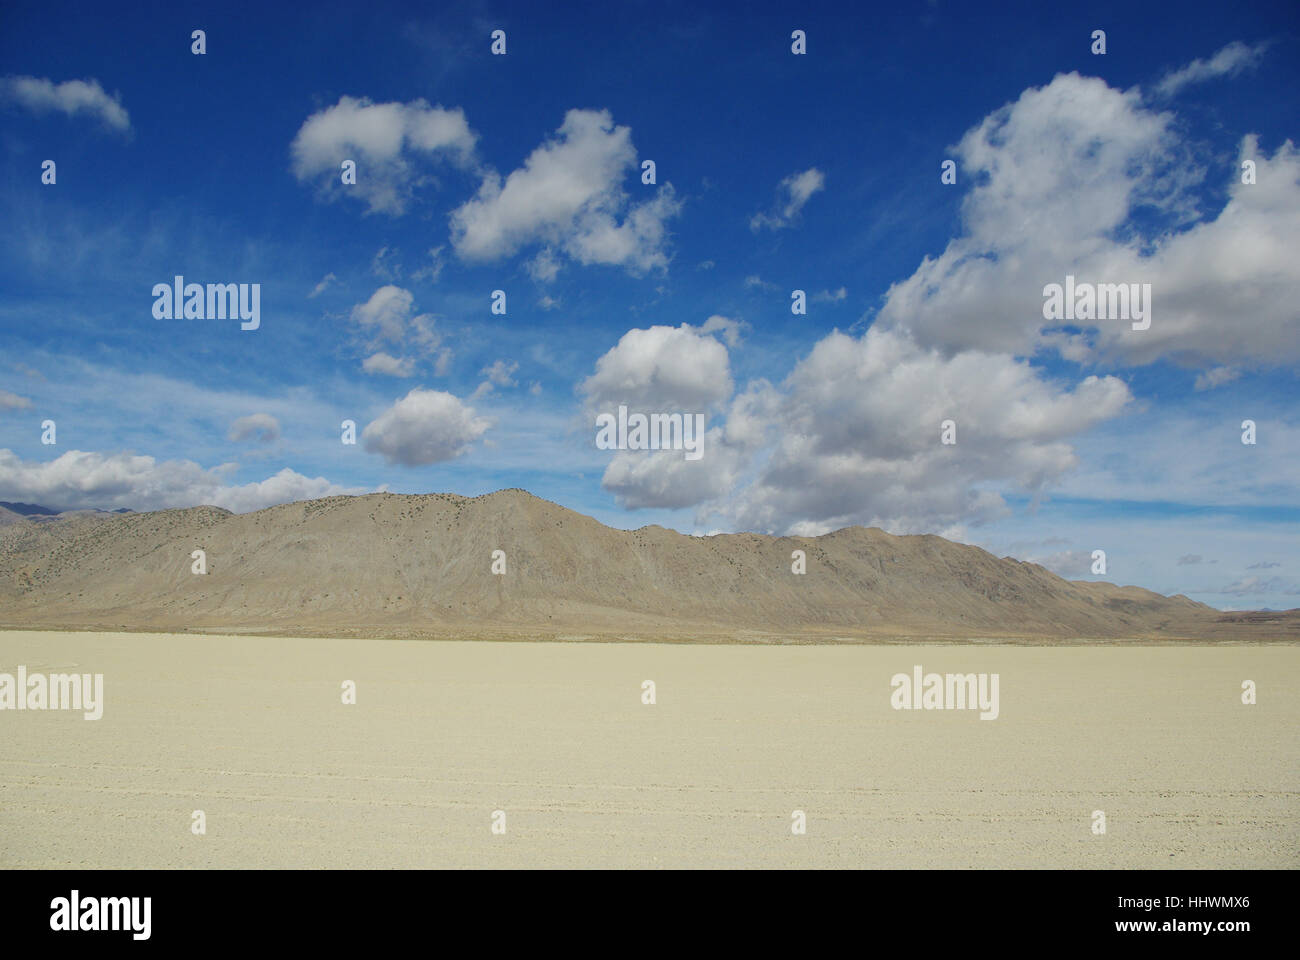 blue, desert, wasteland, far, firmament, sky, mountain, sands, sand, clouds, Stock Photo